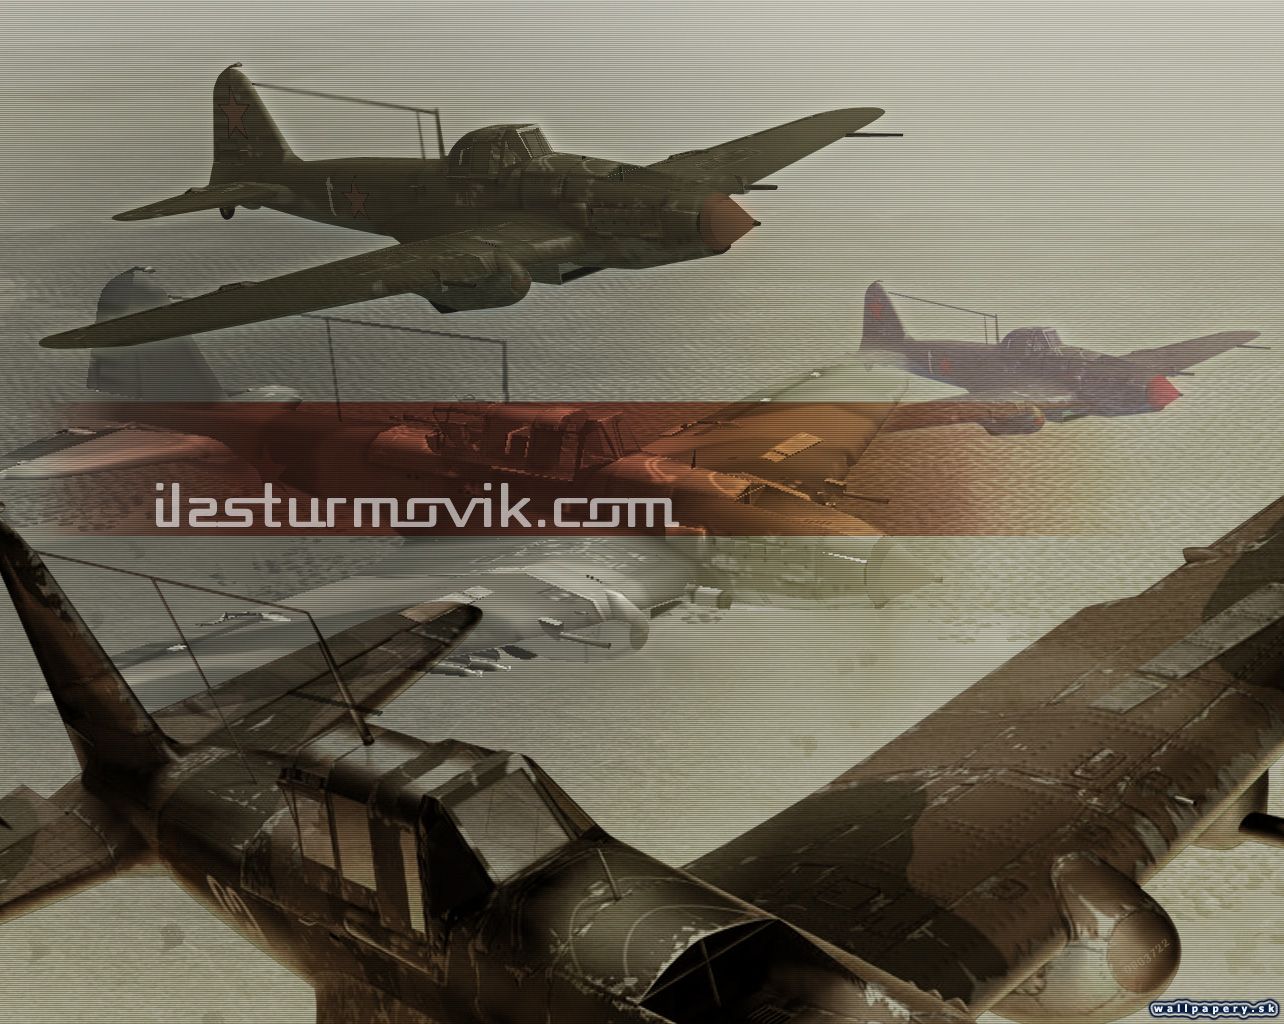 IL-2 Sturmovik - wallpaper 5